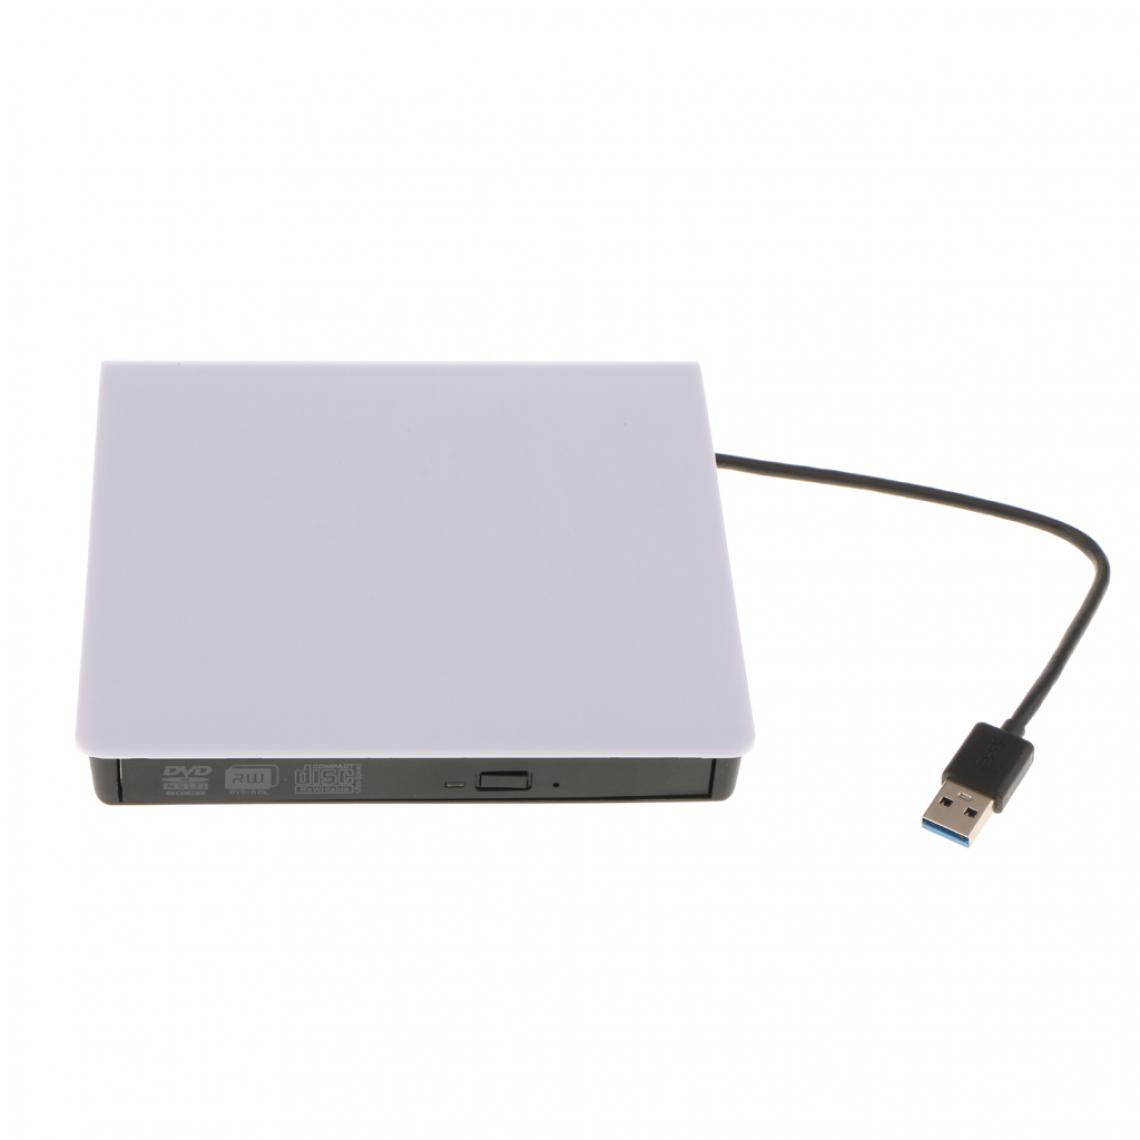 marque generique - Usb 3.0 haute vitesse cd / dvd-rw graveur lecteur externe pour ordinateur portable blanc - SSD Interne